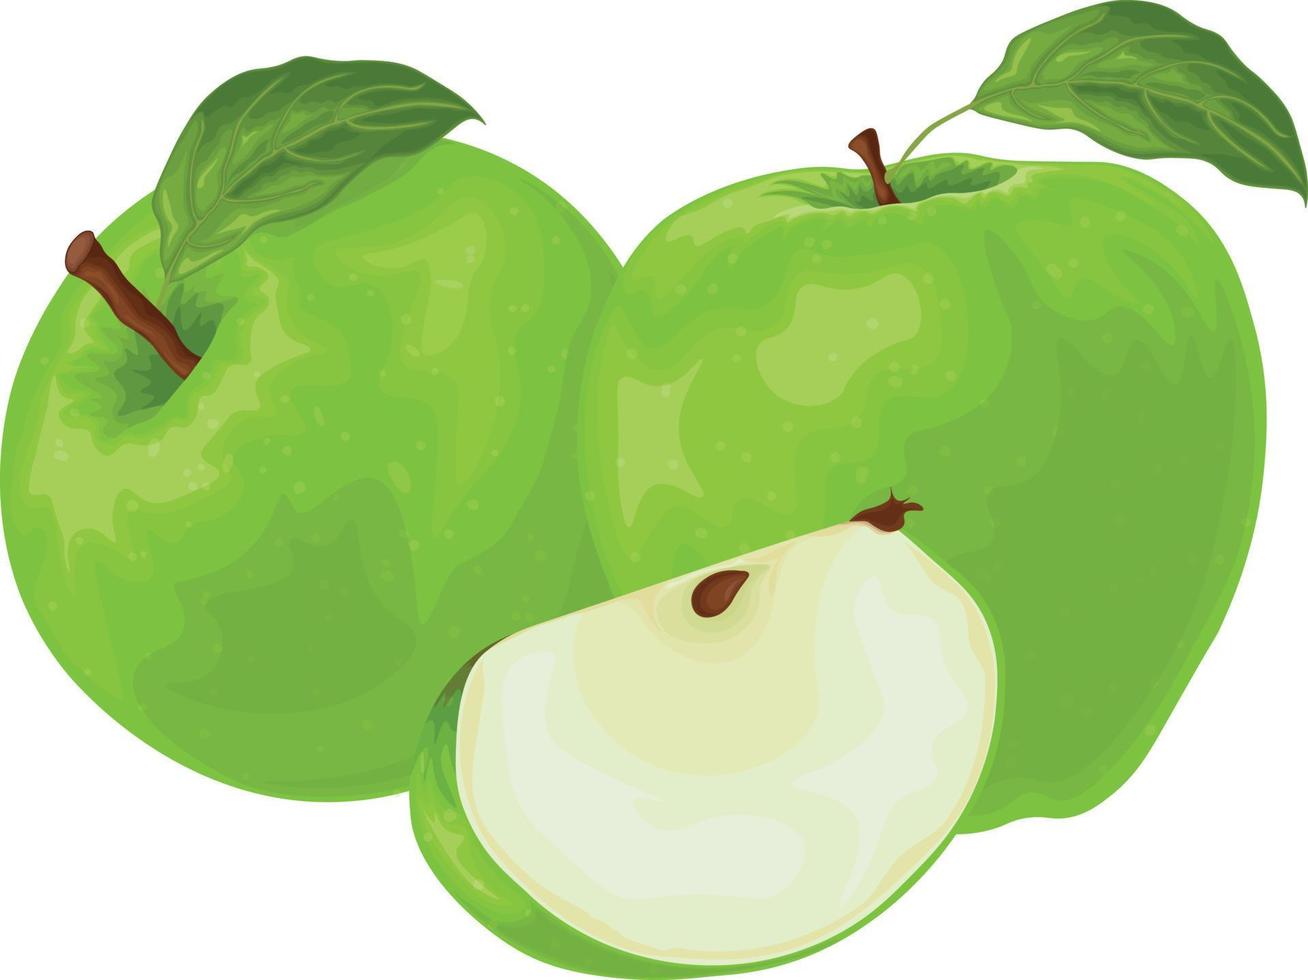 manzana. la imagen de una manzana verde en la sección. fruta fresca del jardín. producto vegetariano ilustración vectorial aislada en un fondo blanco vector